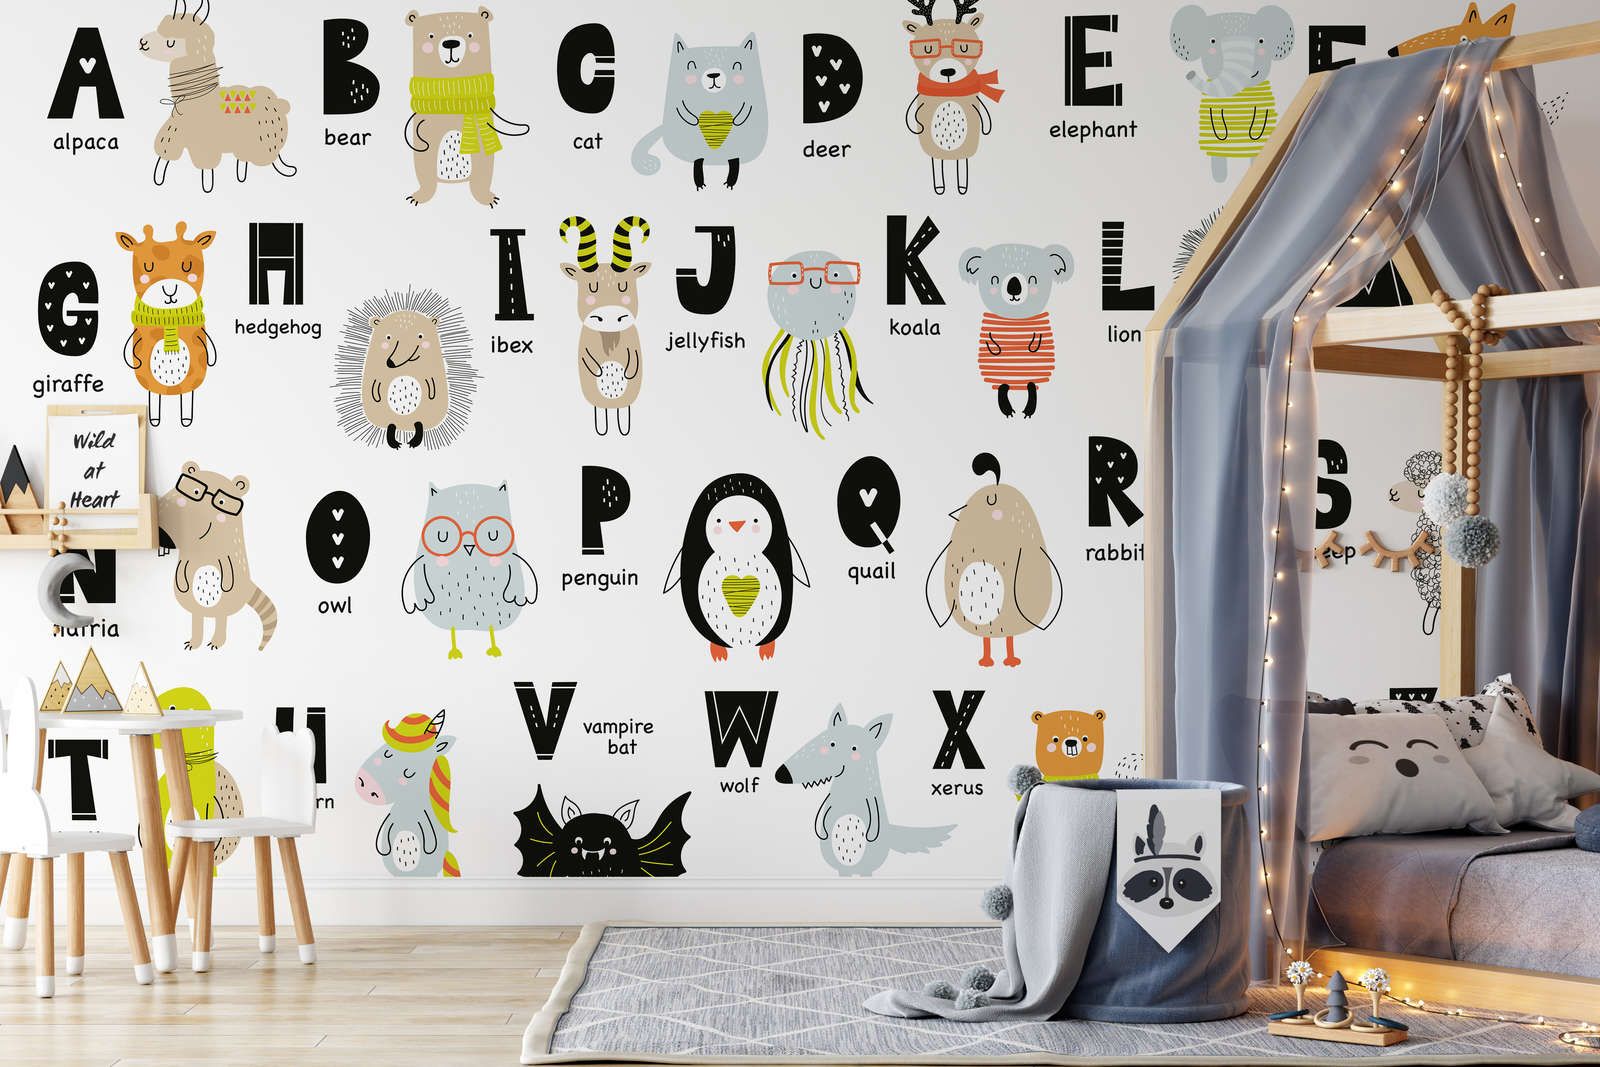             Digital behang Alfabet met dieren en dierennamen - Glad & licht glanzend vlies
        